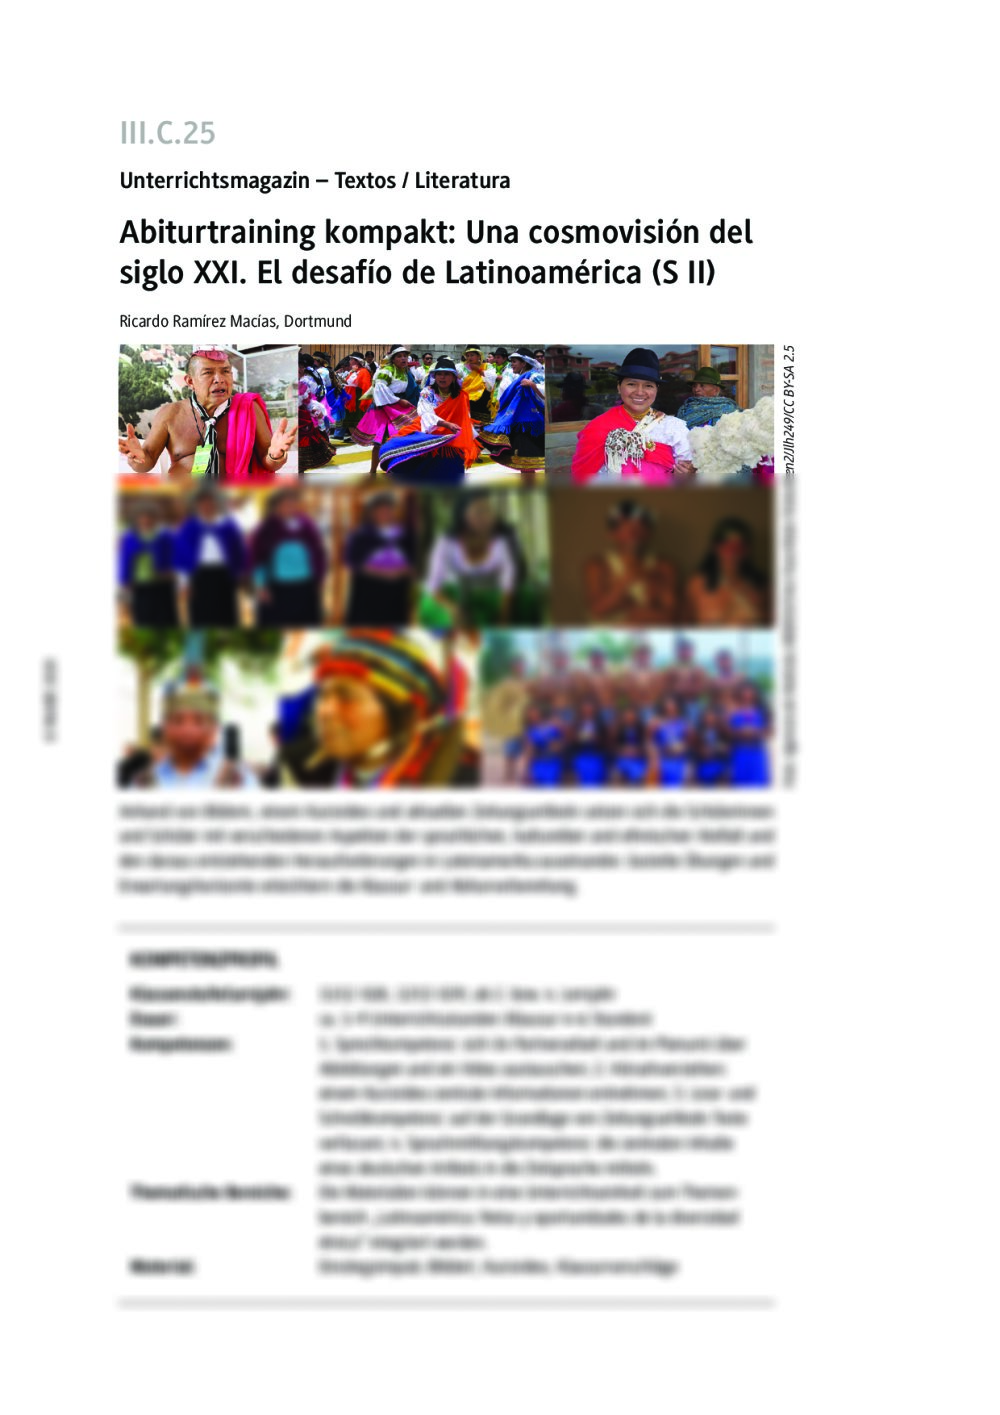 Una cosmovisión del siglo XXI. El desafío de Latinoamérica - Seite 1